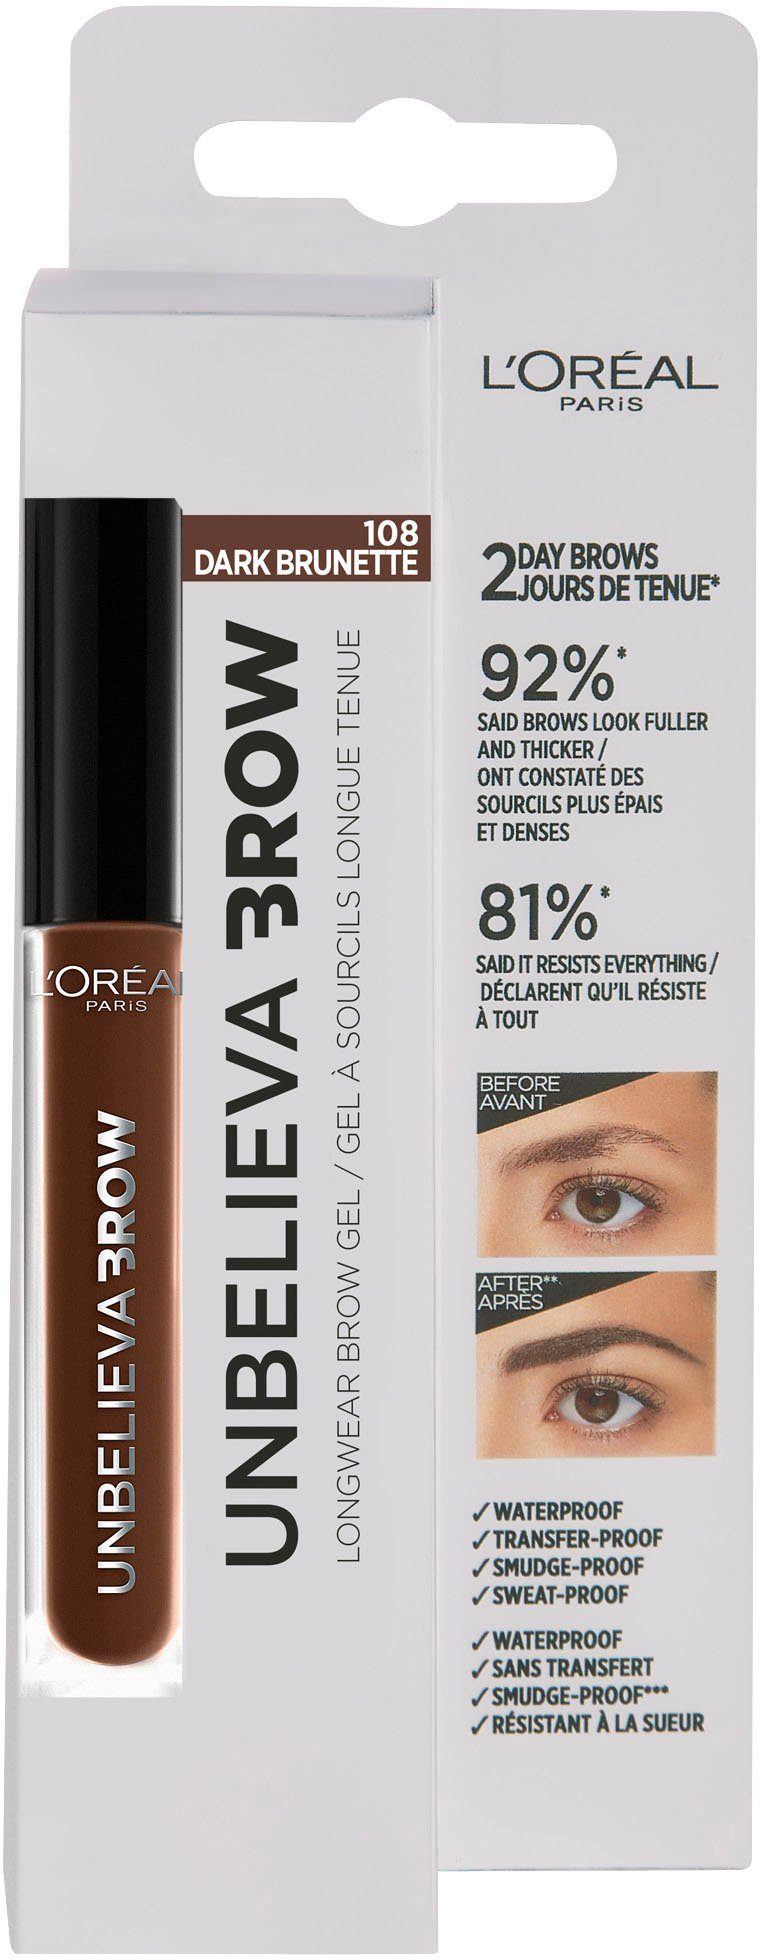 Unbelieva Augen-Make-Up wischfest, Brunette Augenbrauen-Gel unterschiedlichen Applikatoren, 3.0 L'ORÉAL PARIS mit Brow,